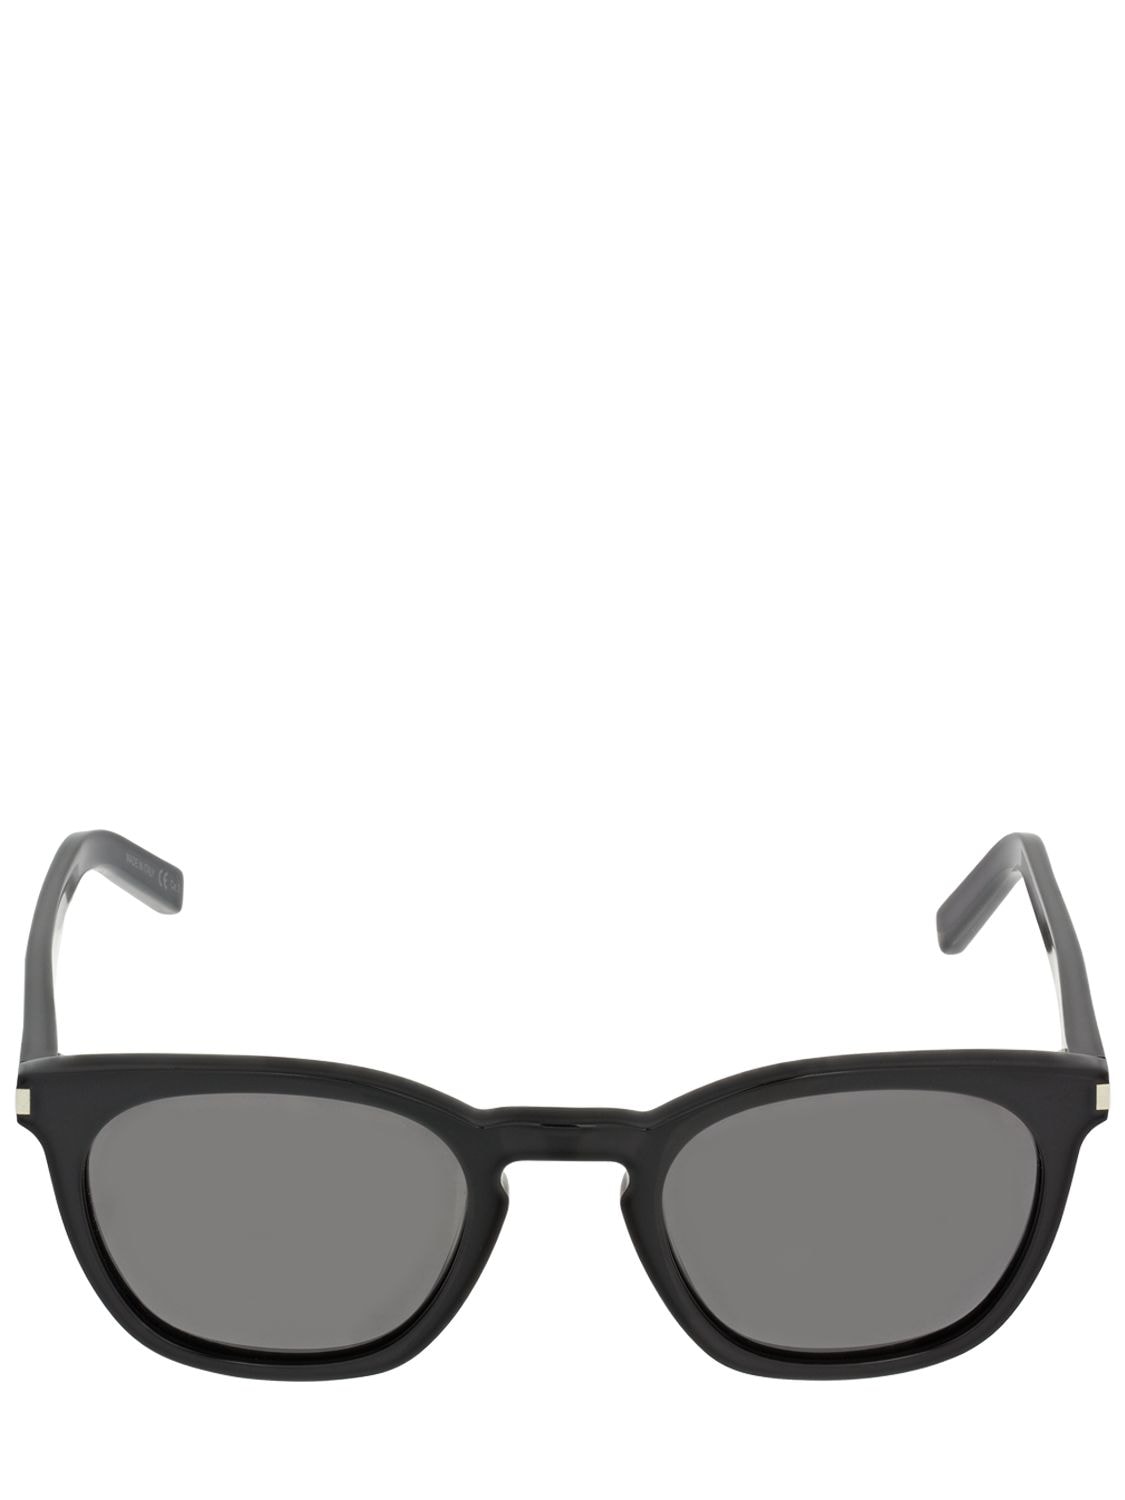 Image of Sl 28 Slim Round Acetate Sunglasses